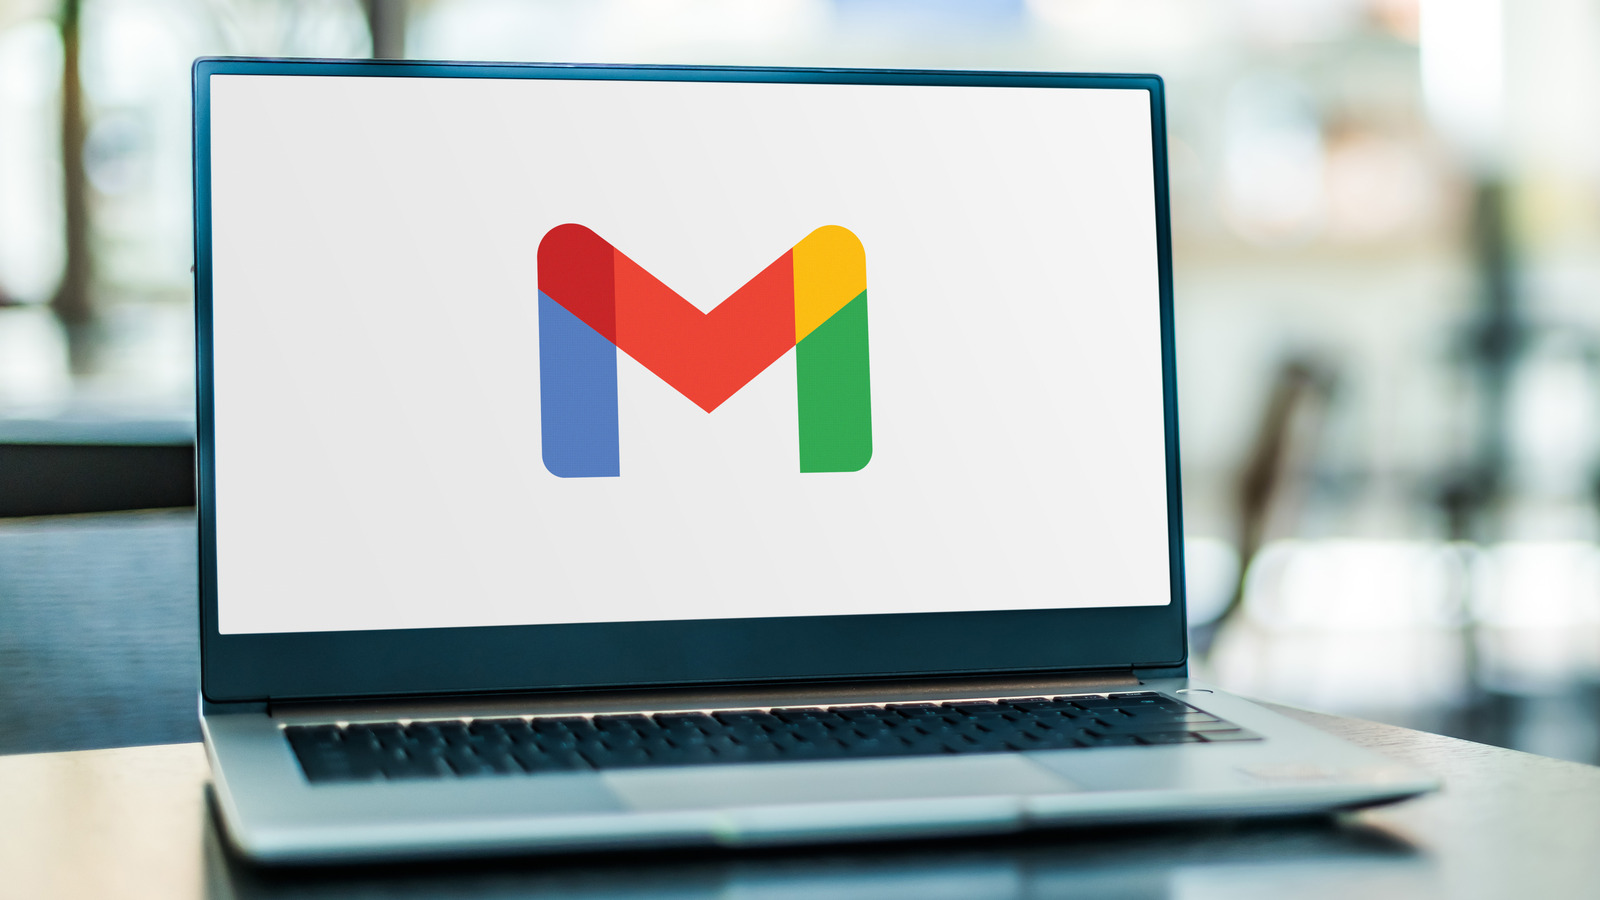 Gmail na Internet está recebendo um facelift que permite ocultar aplicativos